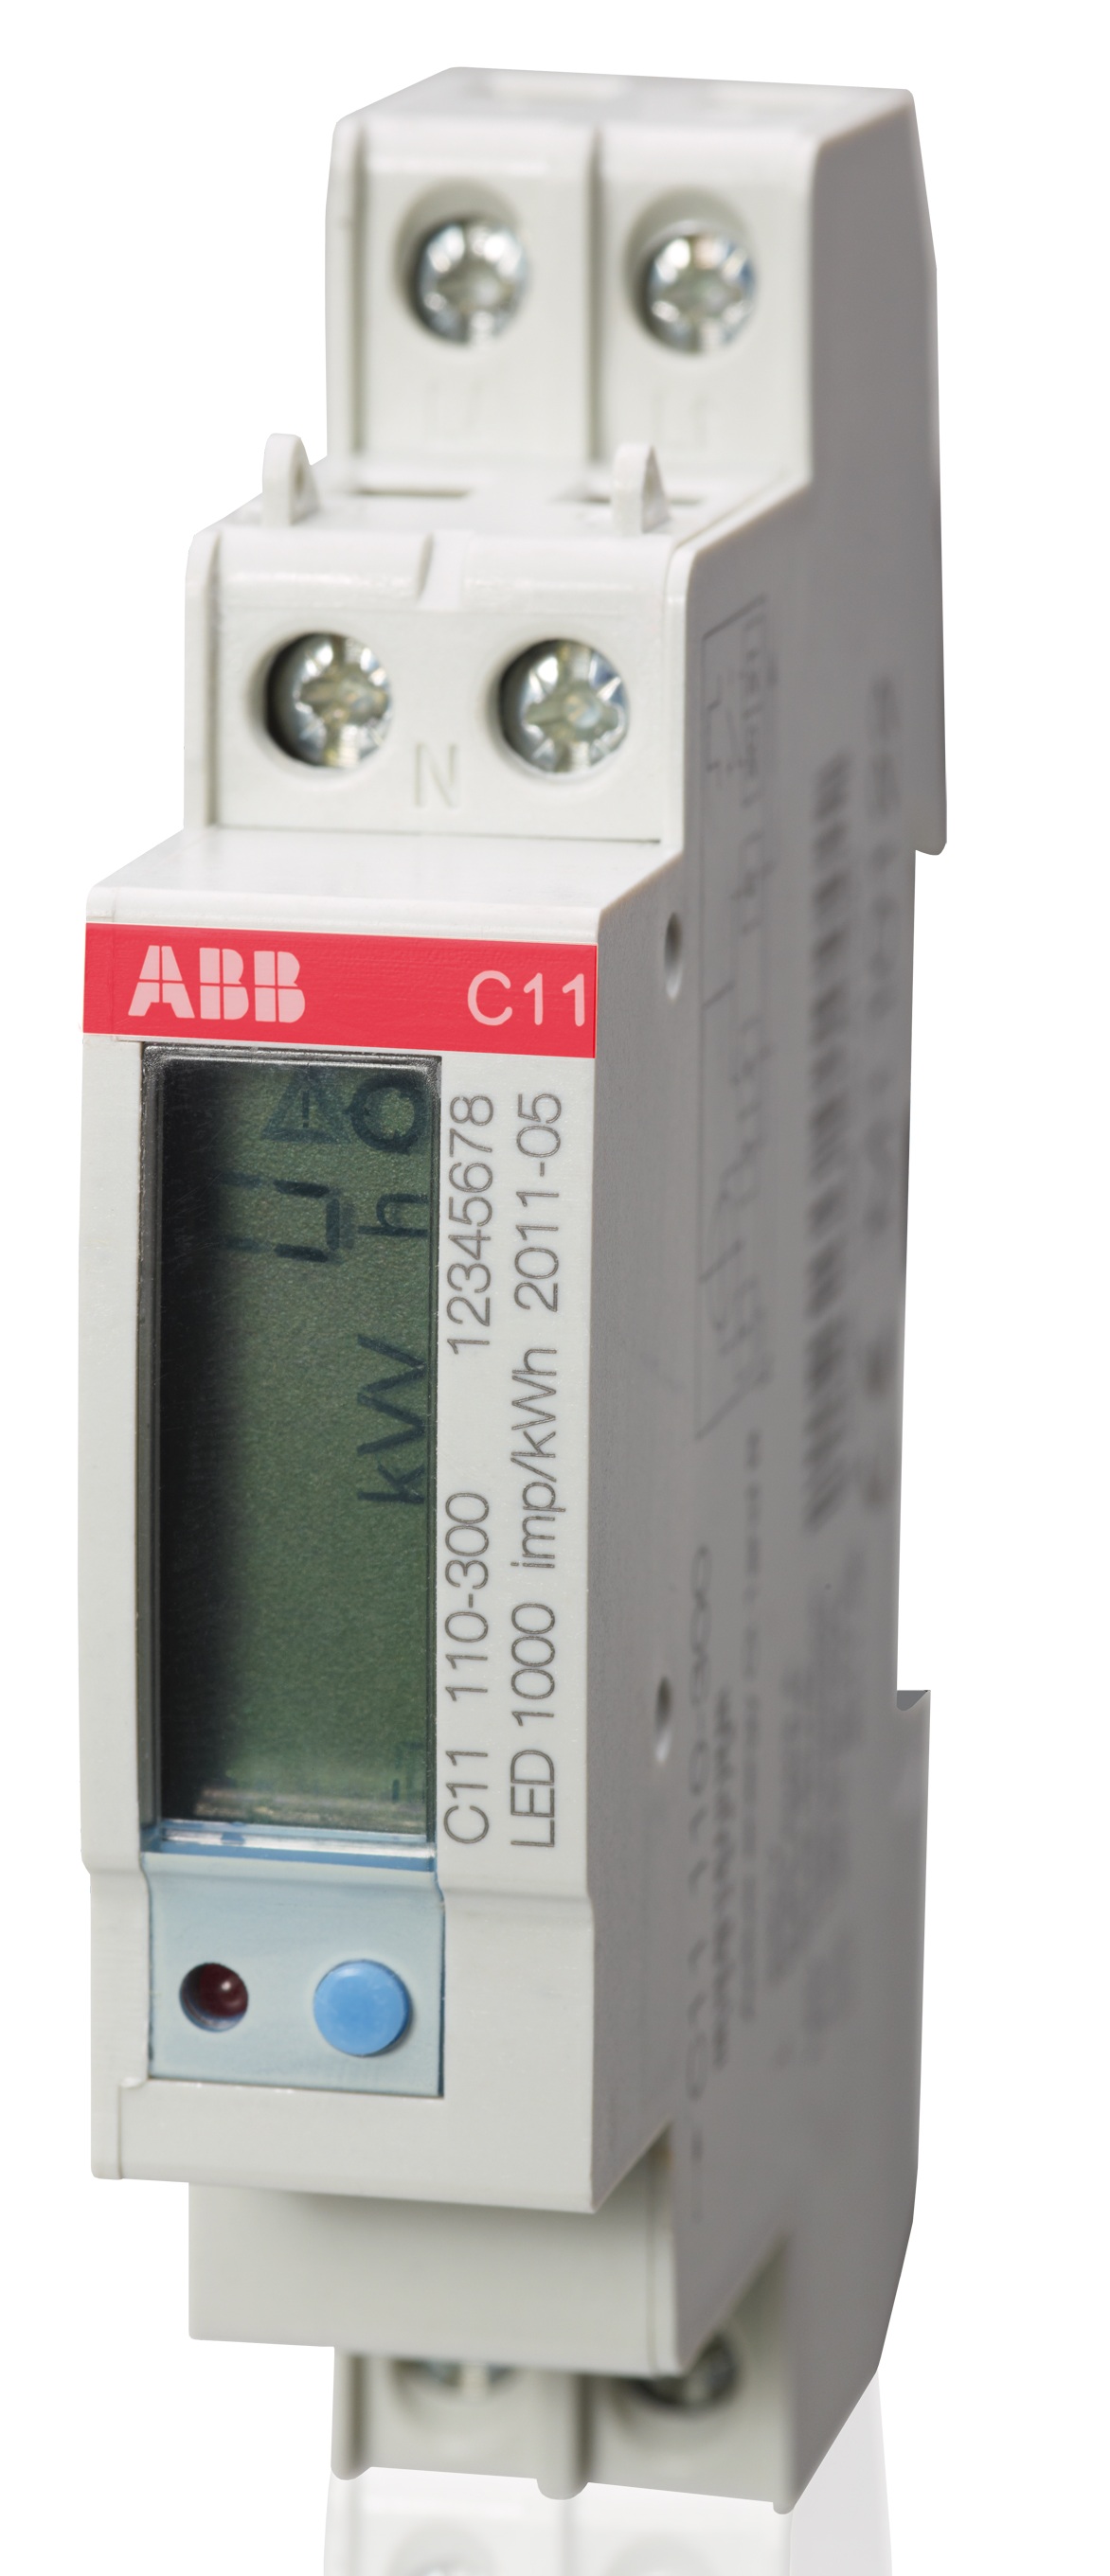 ABB: C11 è il contatore d'energia digitale semplice e compatto